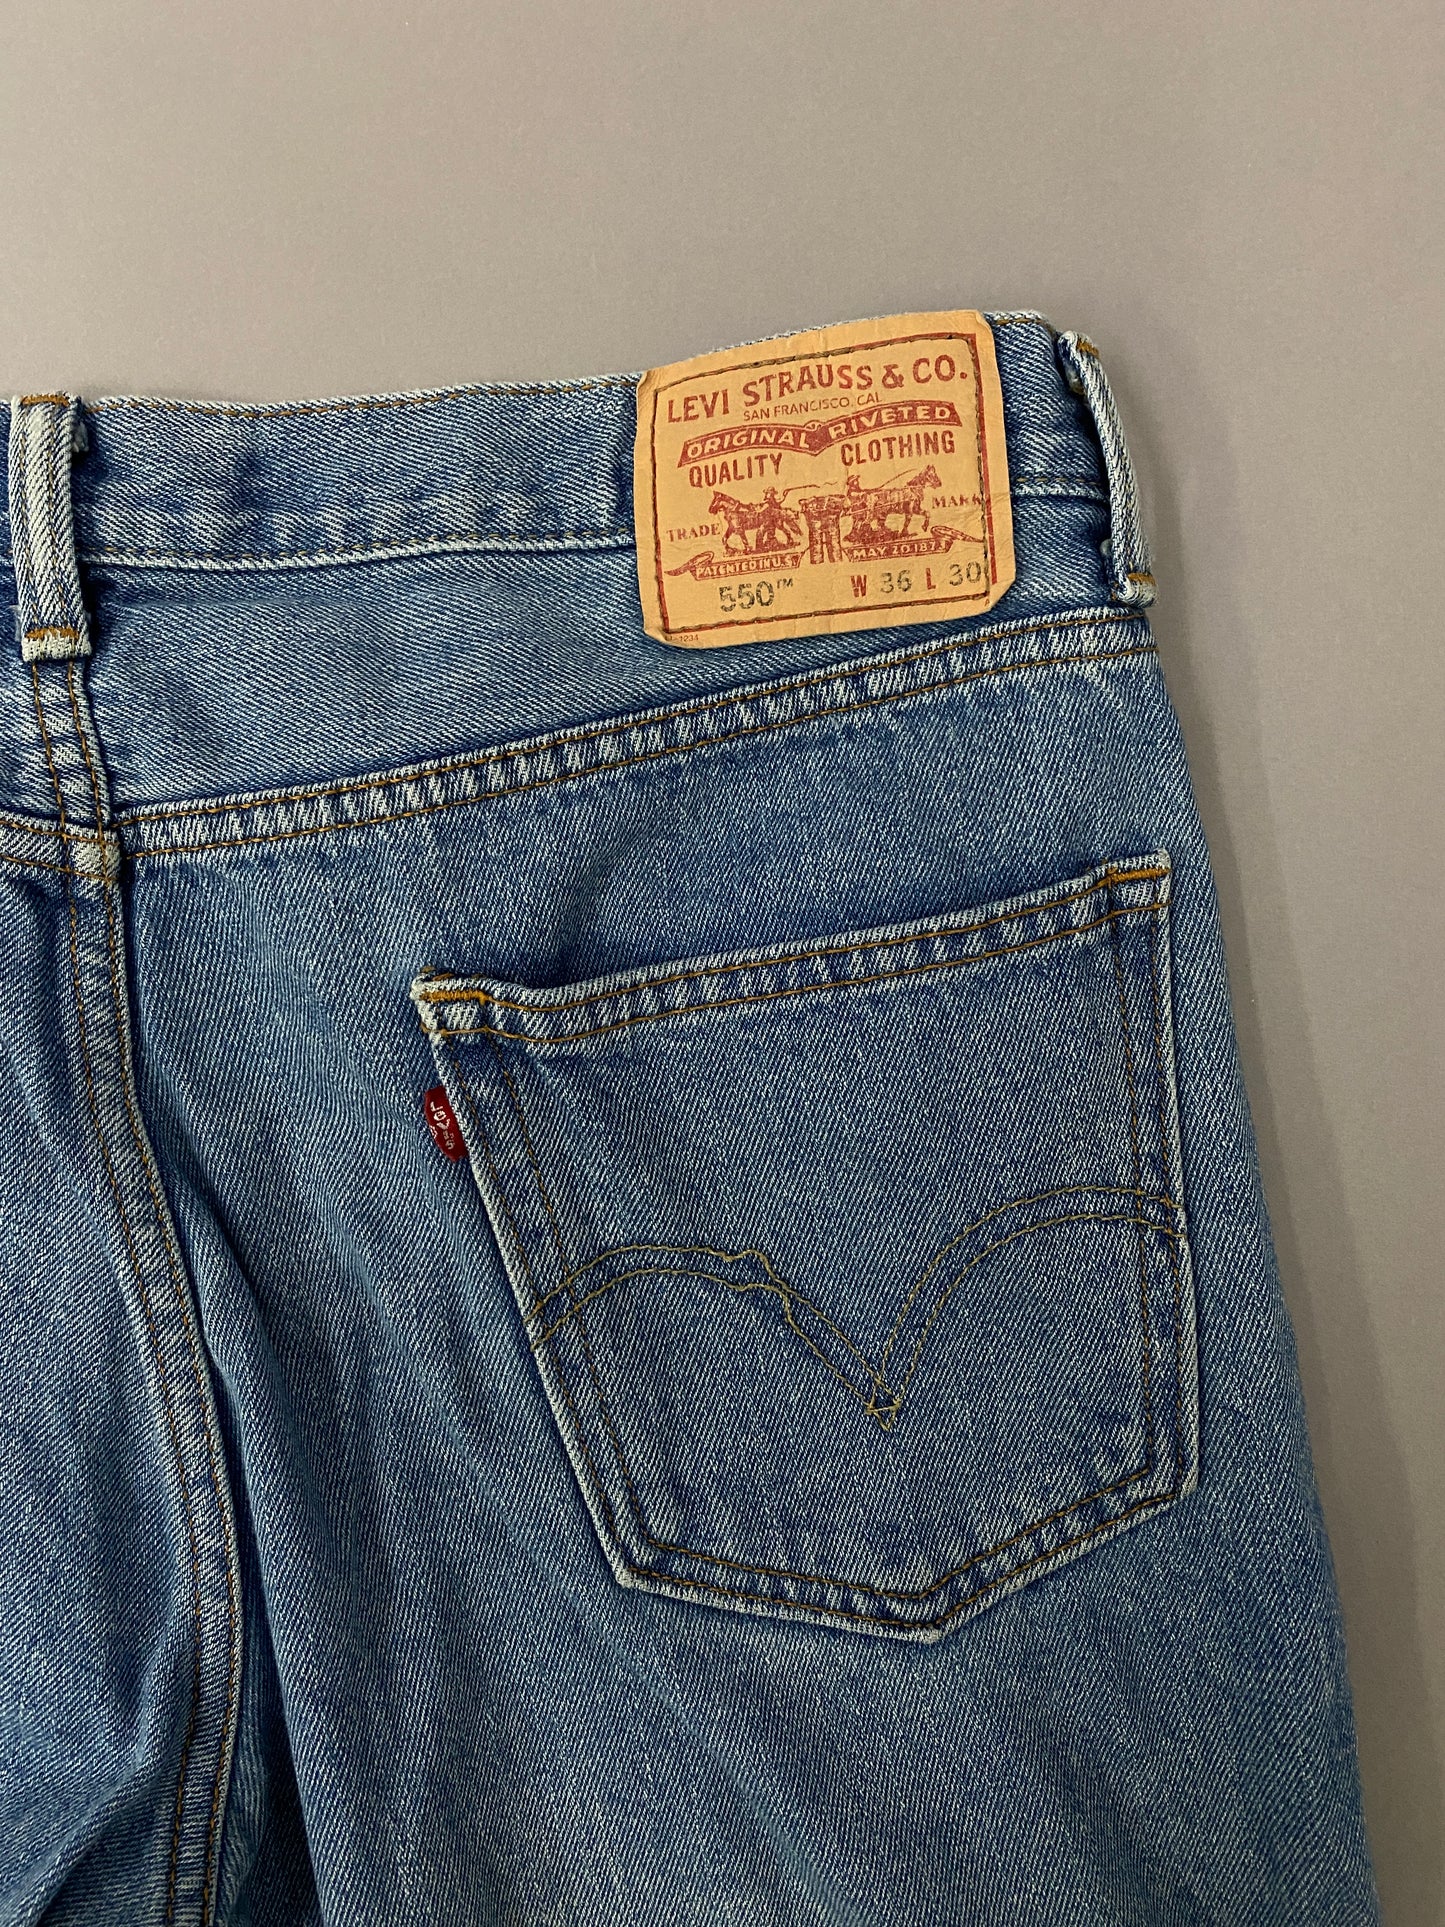 Jeans Levi's 550 - 36 x 30